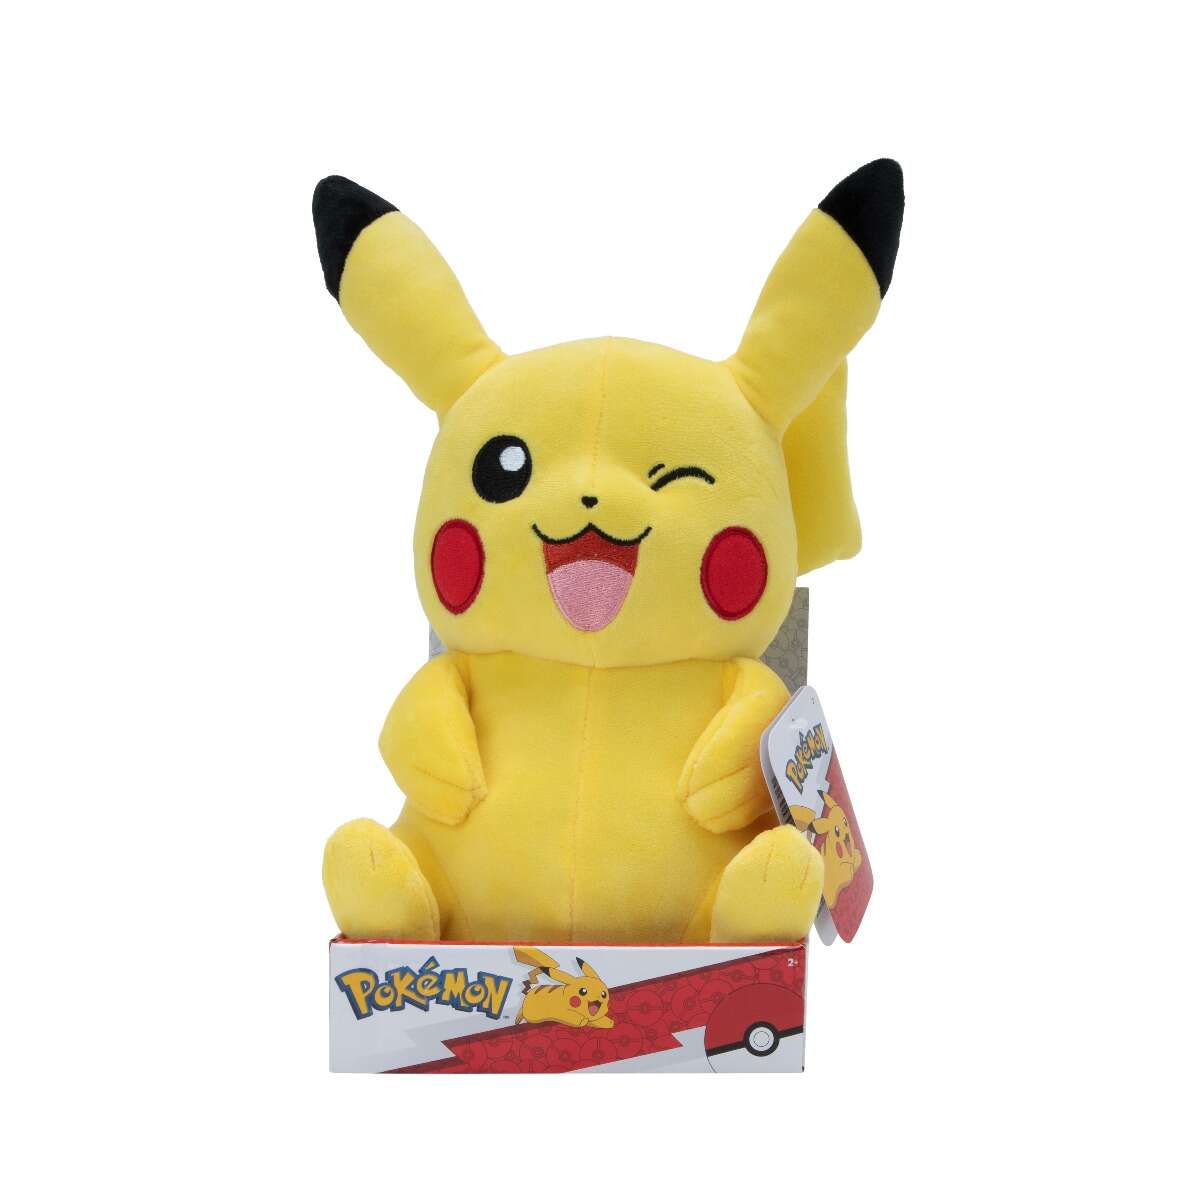 Pokemon - jucarie de plus 30 cm, pikachu, s4